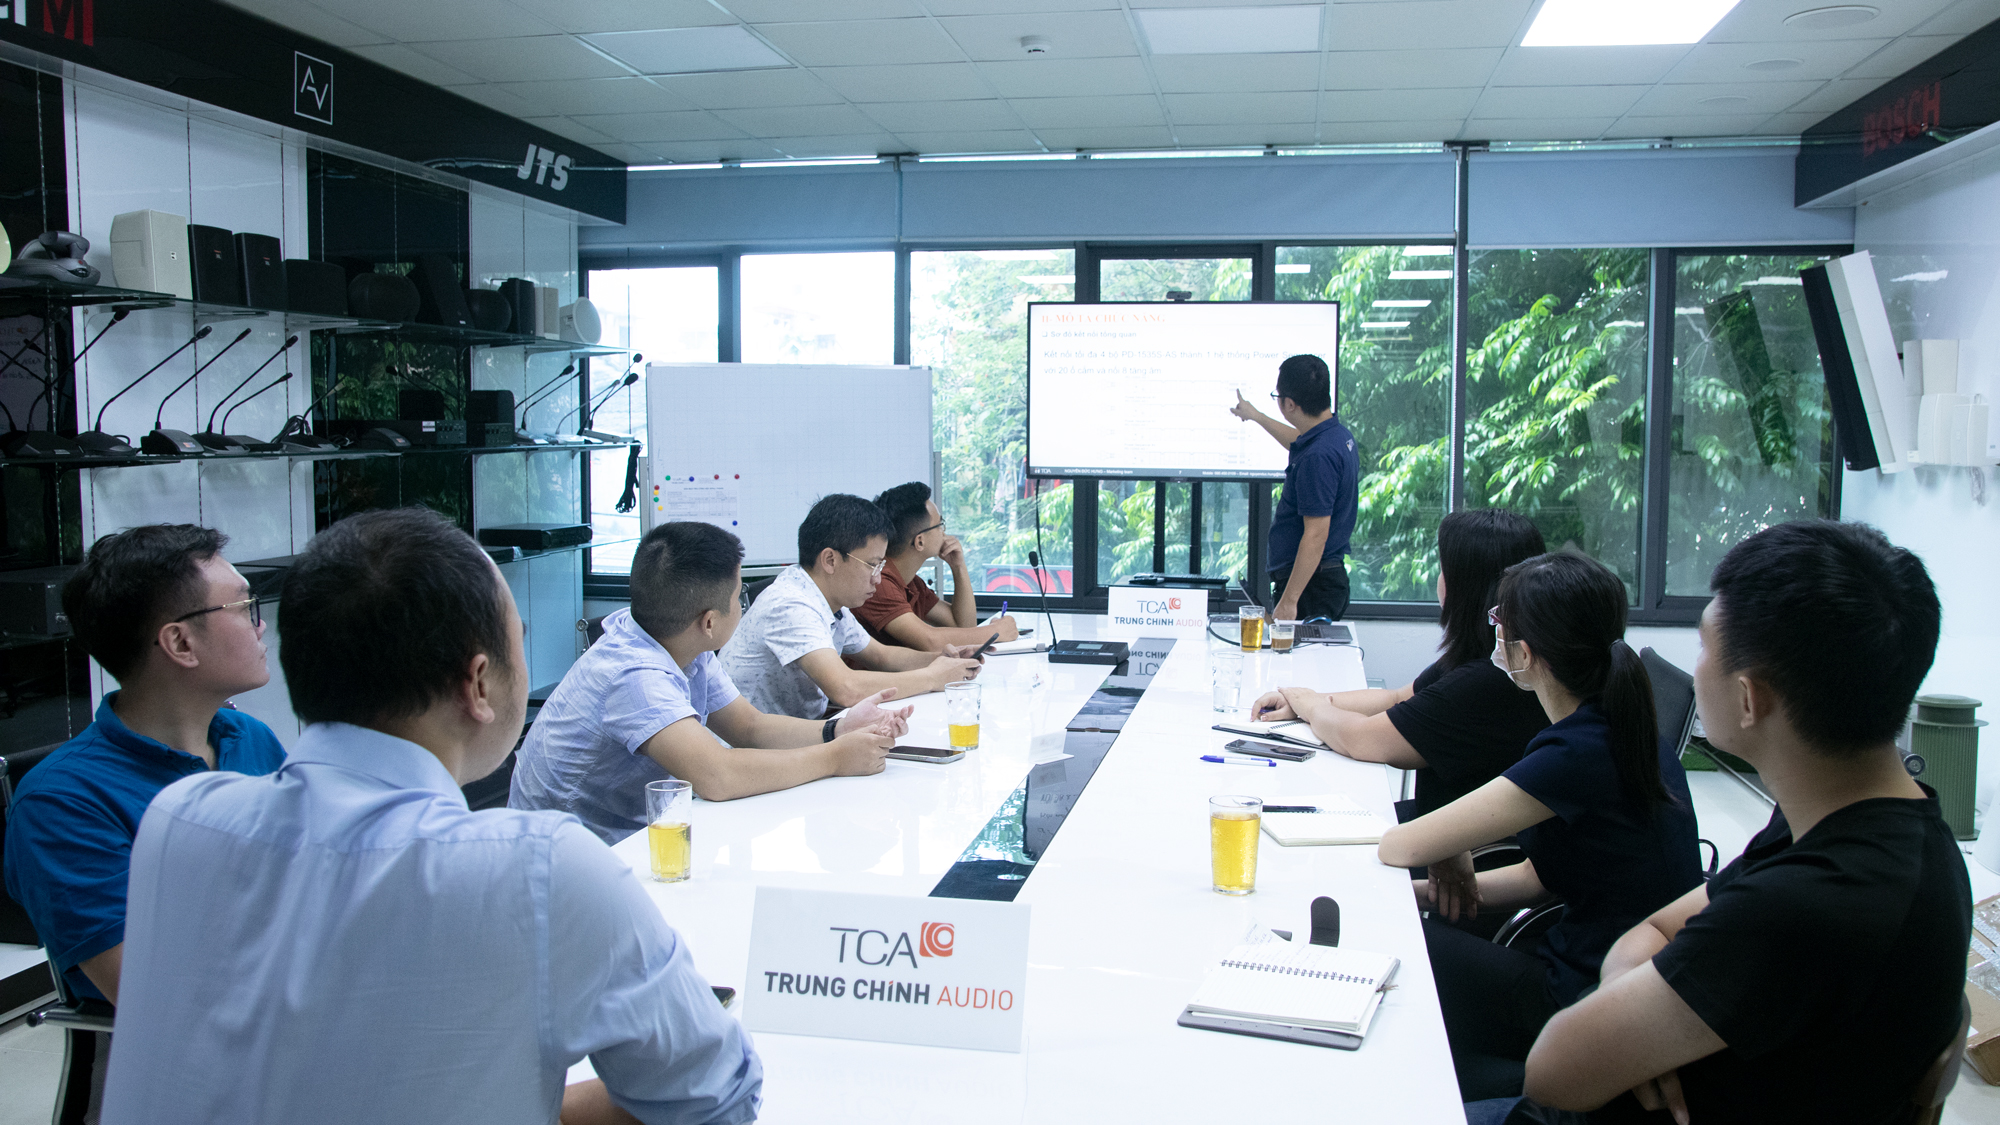 TOA VIỆT NAM giới thiệu sản phẩm mới tại TCA - Trung Chính Audio